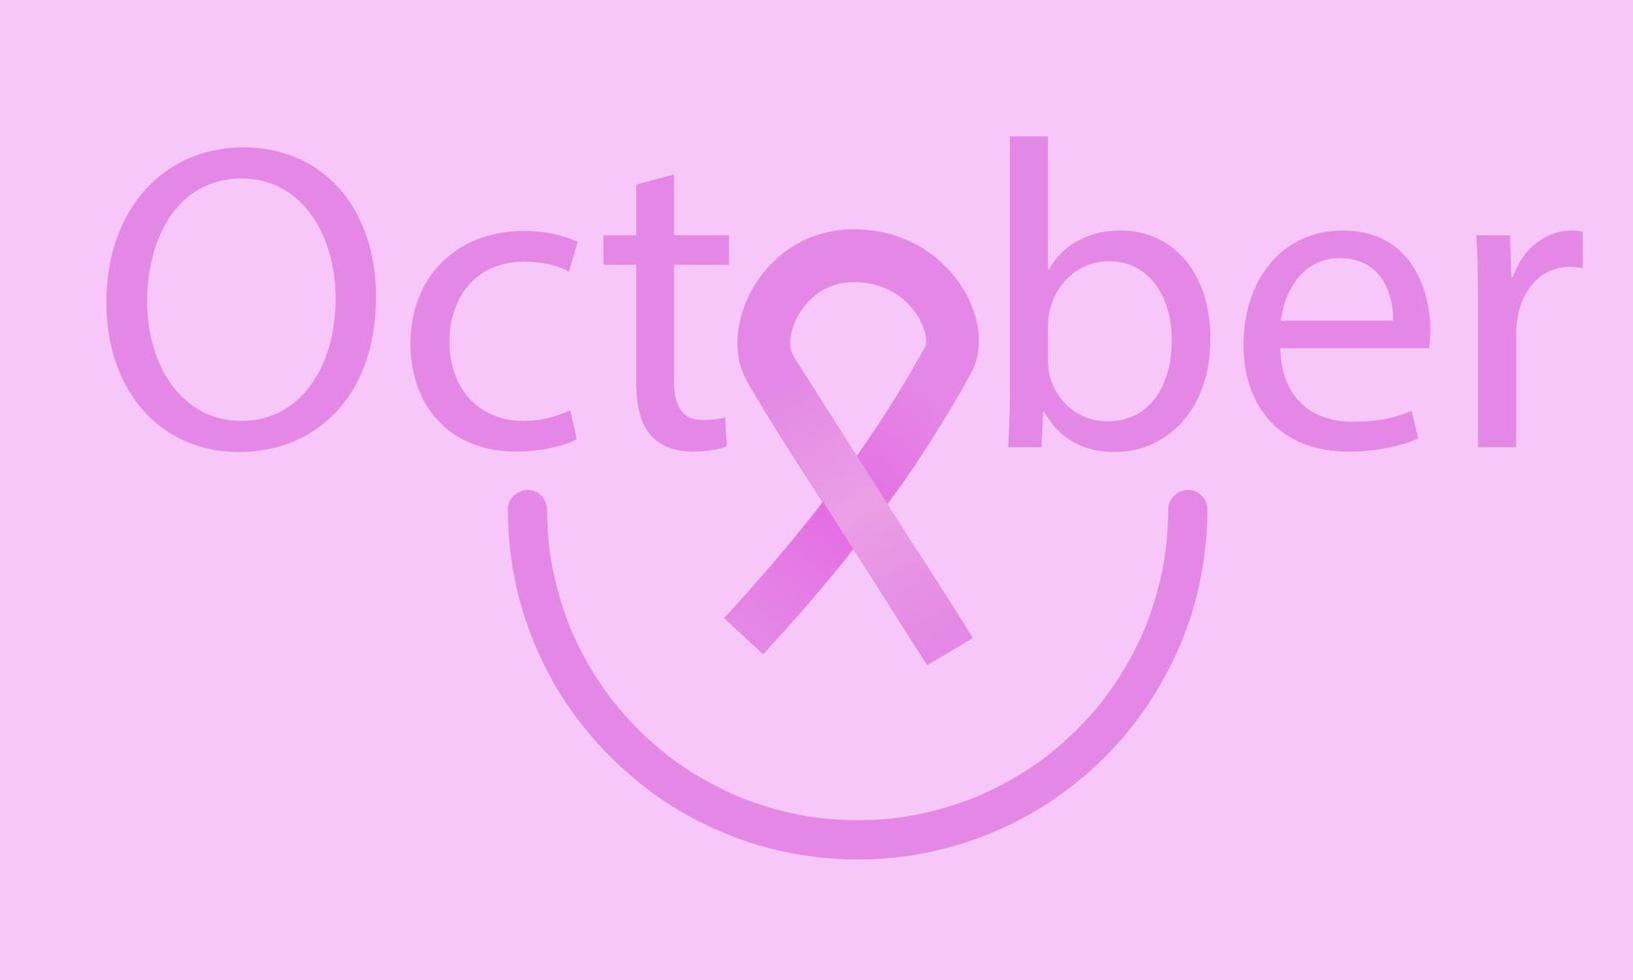 borst kanker bewustzijn maand in oktober. Dames. medisch onderwerp. vector illustratie.